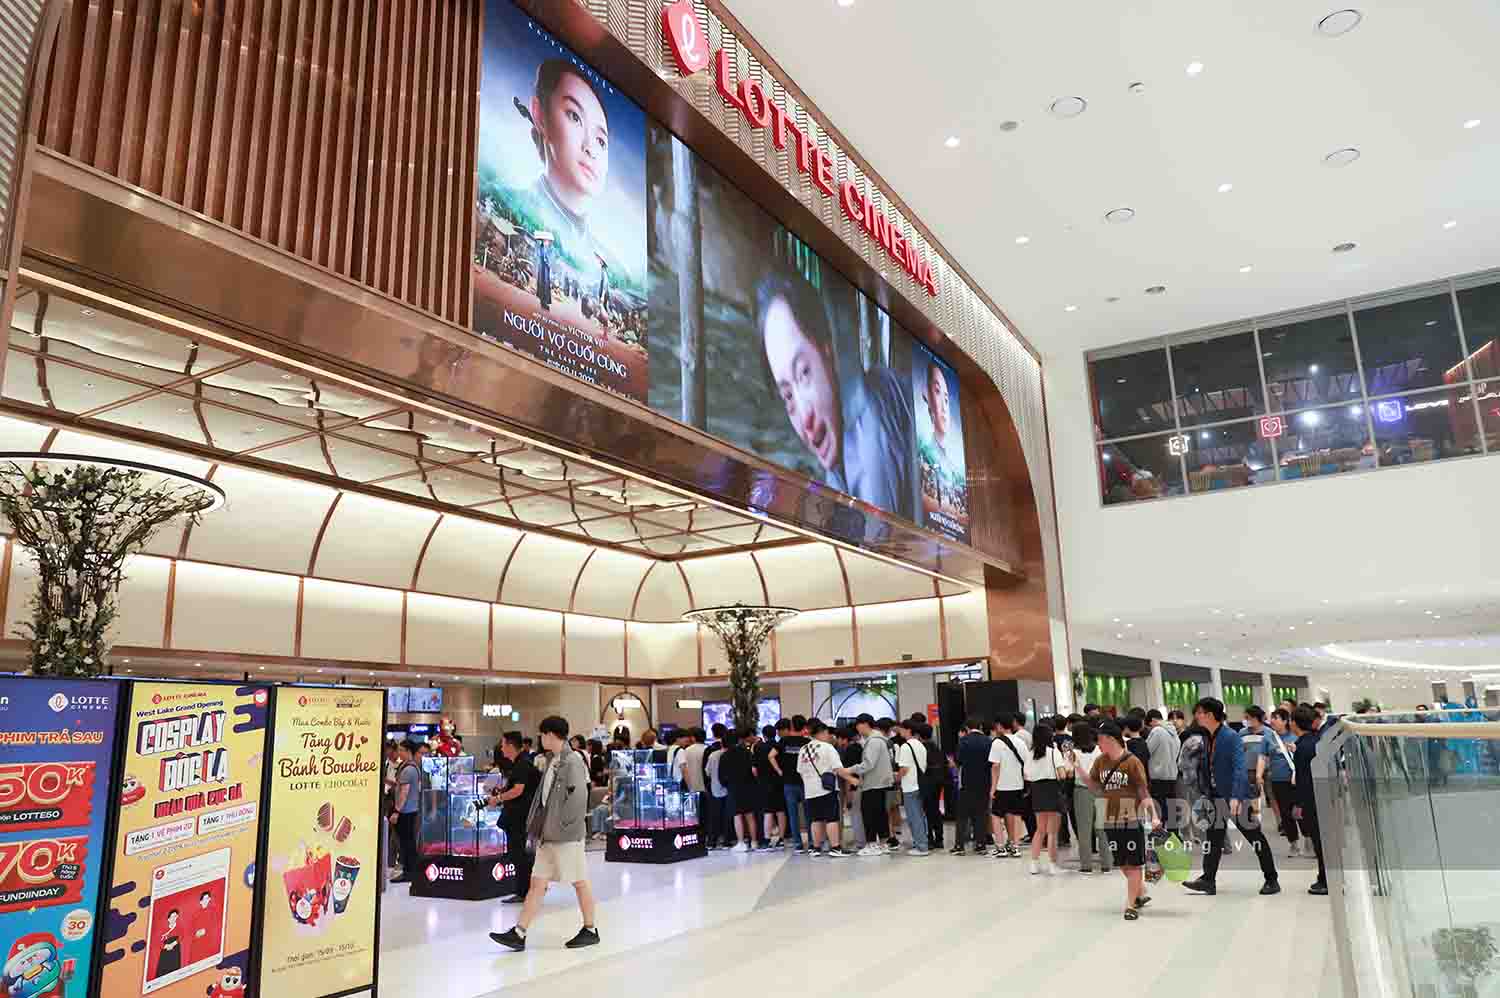  Lotte Cinema West Lake đón đông đảo du khách. Tại cụm rạp có tổng 9 rạp chiếu phim và hơn 1.000 ghế ngồi. Lần đầu tiên tại Hà Nội, hai rạp chiếu phim cao cấp CharLotte và Recliner được đưa vào hoạt động, nâng cao trải nghiệm cho người yêu điện ảnh.